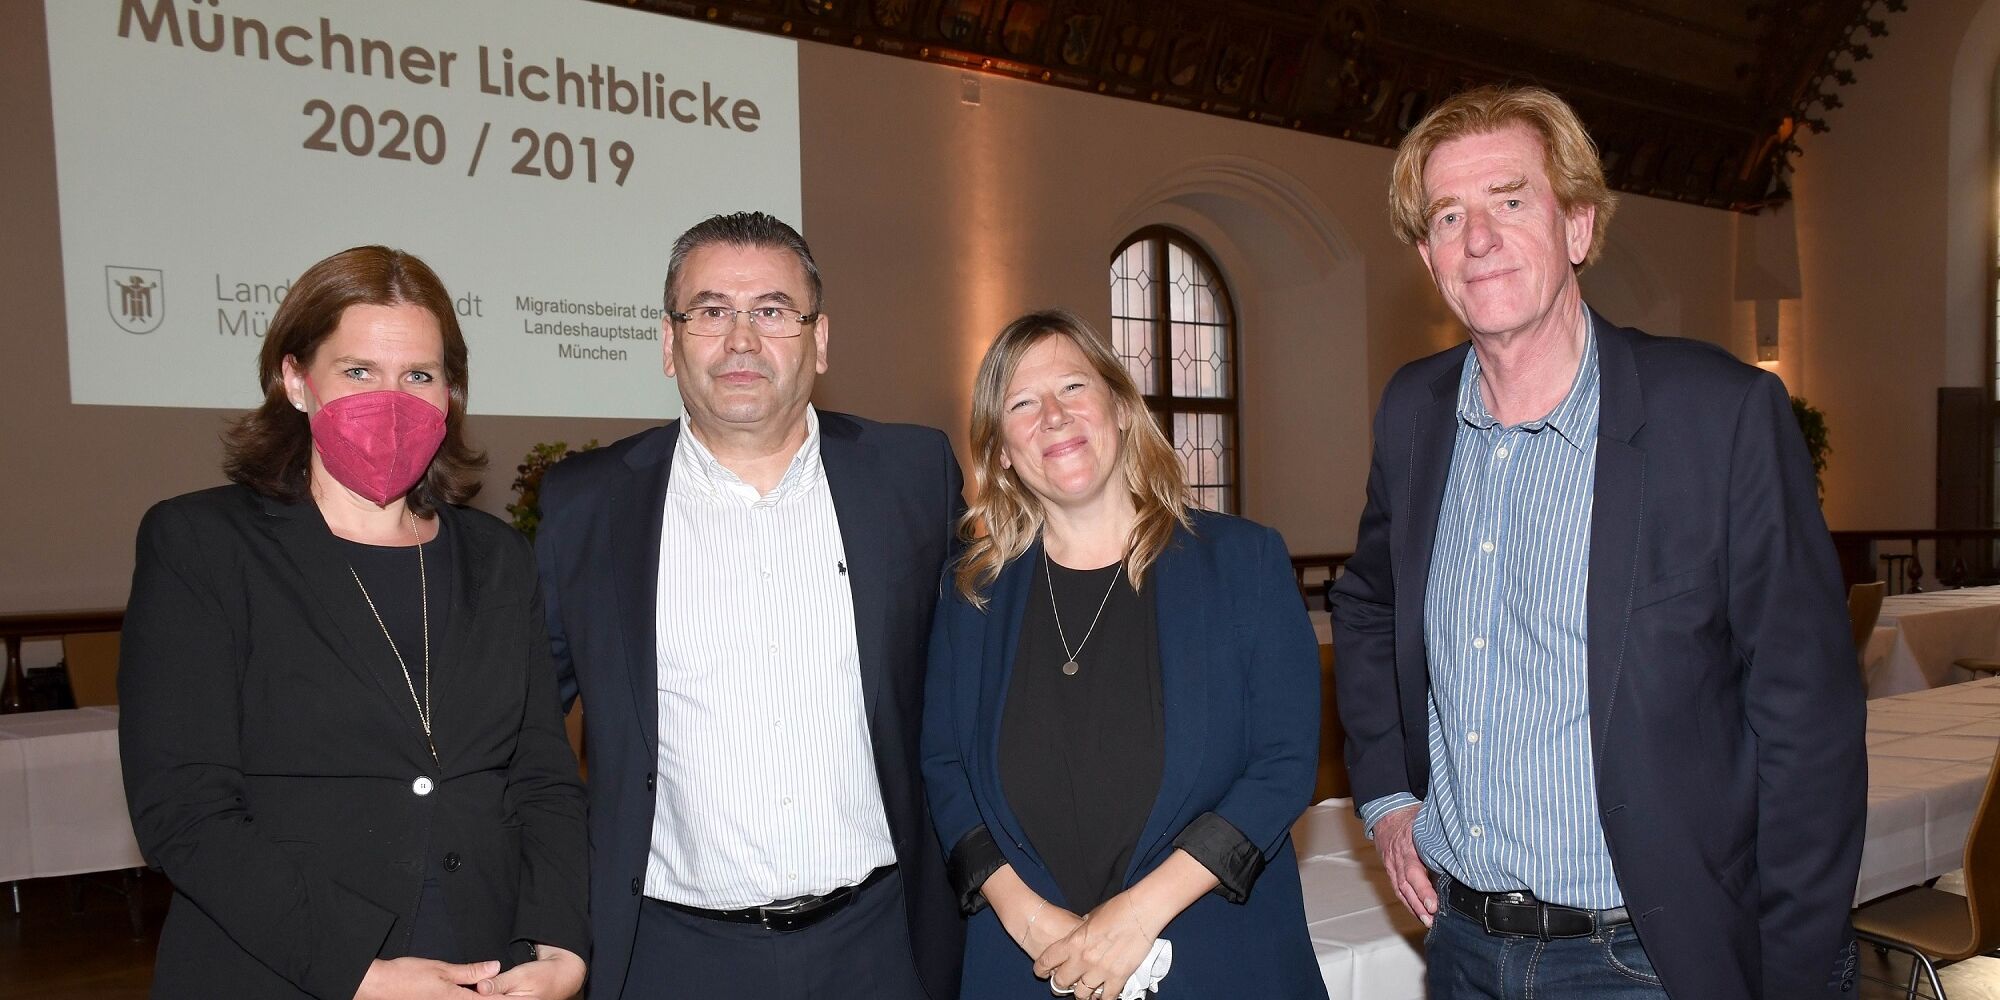 Hier sieht man vier Personen auf der Preisverleihung der Münchner Lichtblicke 2020/2019. Ganz links Verena Dietl, ganz rechts Viktor Schenkel.